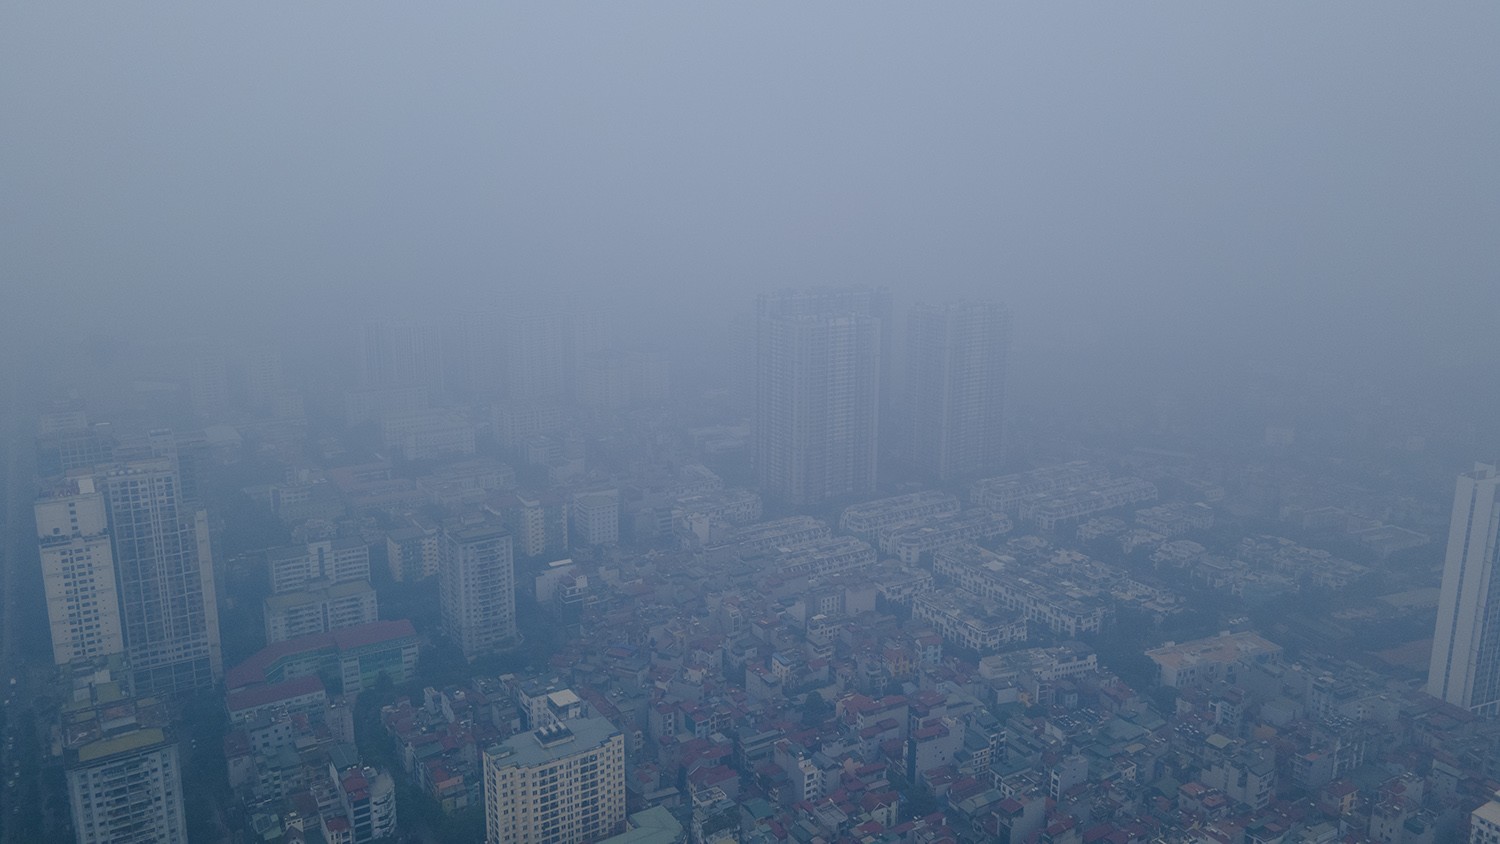 Trung tâm Hà Nội chìm trong sương mù dày đặc, chất lượng không khí nhiều nơi ở “mức đỏ” - 15